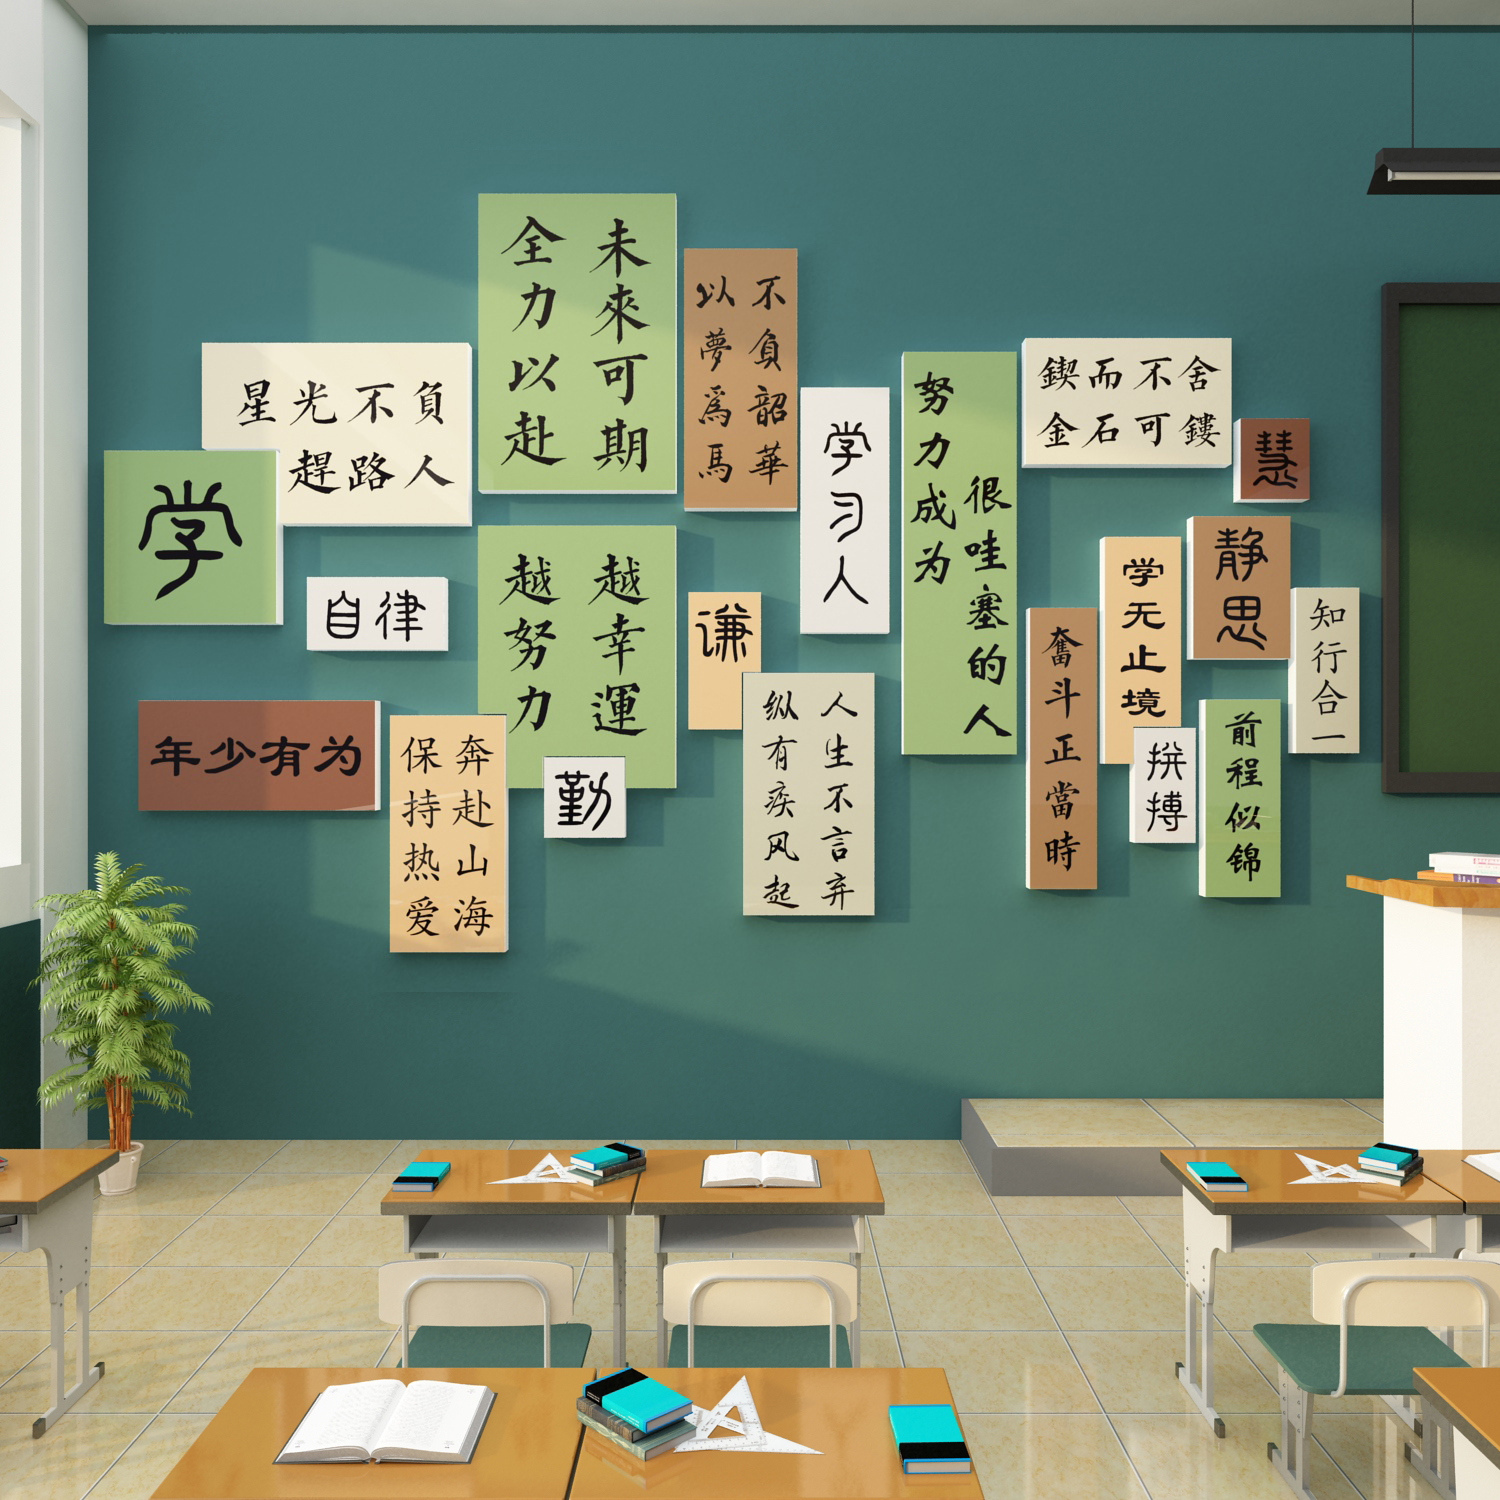 班级布置教室装饰书香文化墙面贴纸初中高励志黑板报神器新学期开